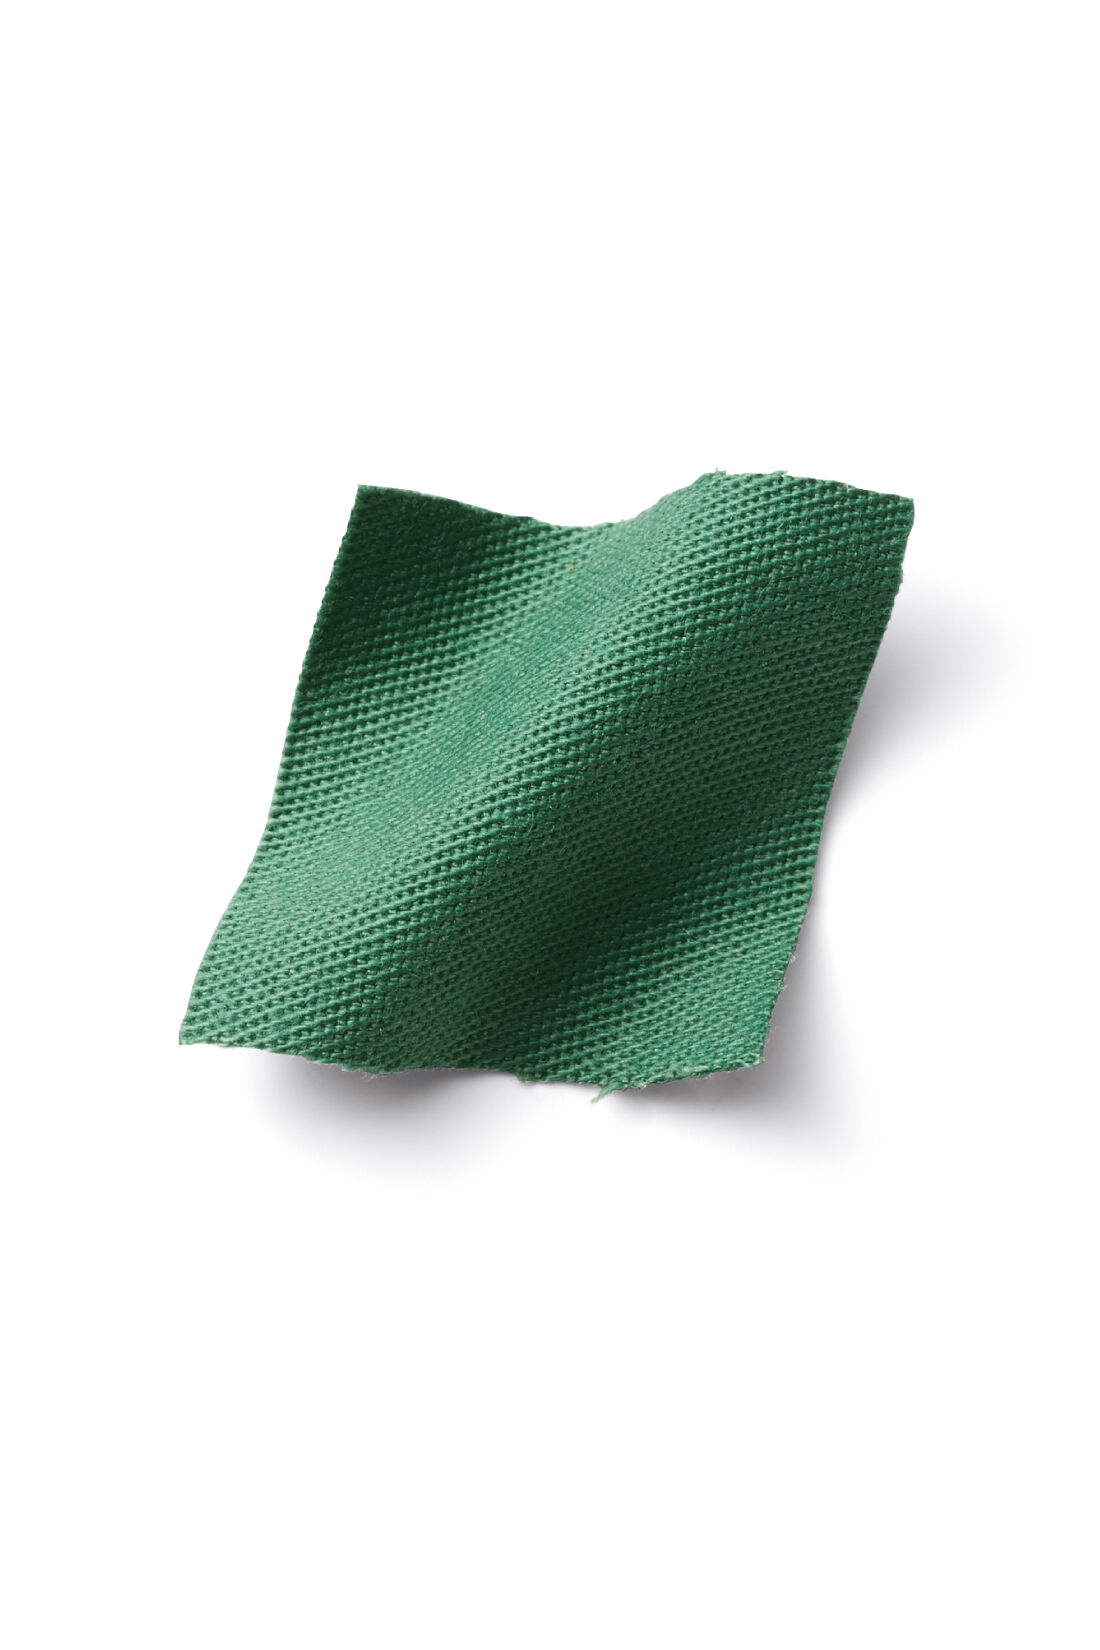 Live in  comfort|リブ イン コンフォート　堀川波さんに聞く　色を楽しむ大人のカジュアルコート〈グリーン〉|肌なじみのきれいな浅めのグリーンで春感アップ。着まわししやすいツイル素材。